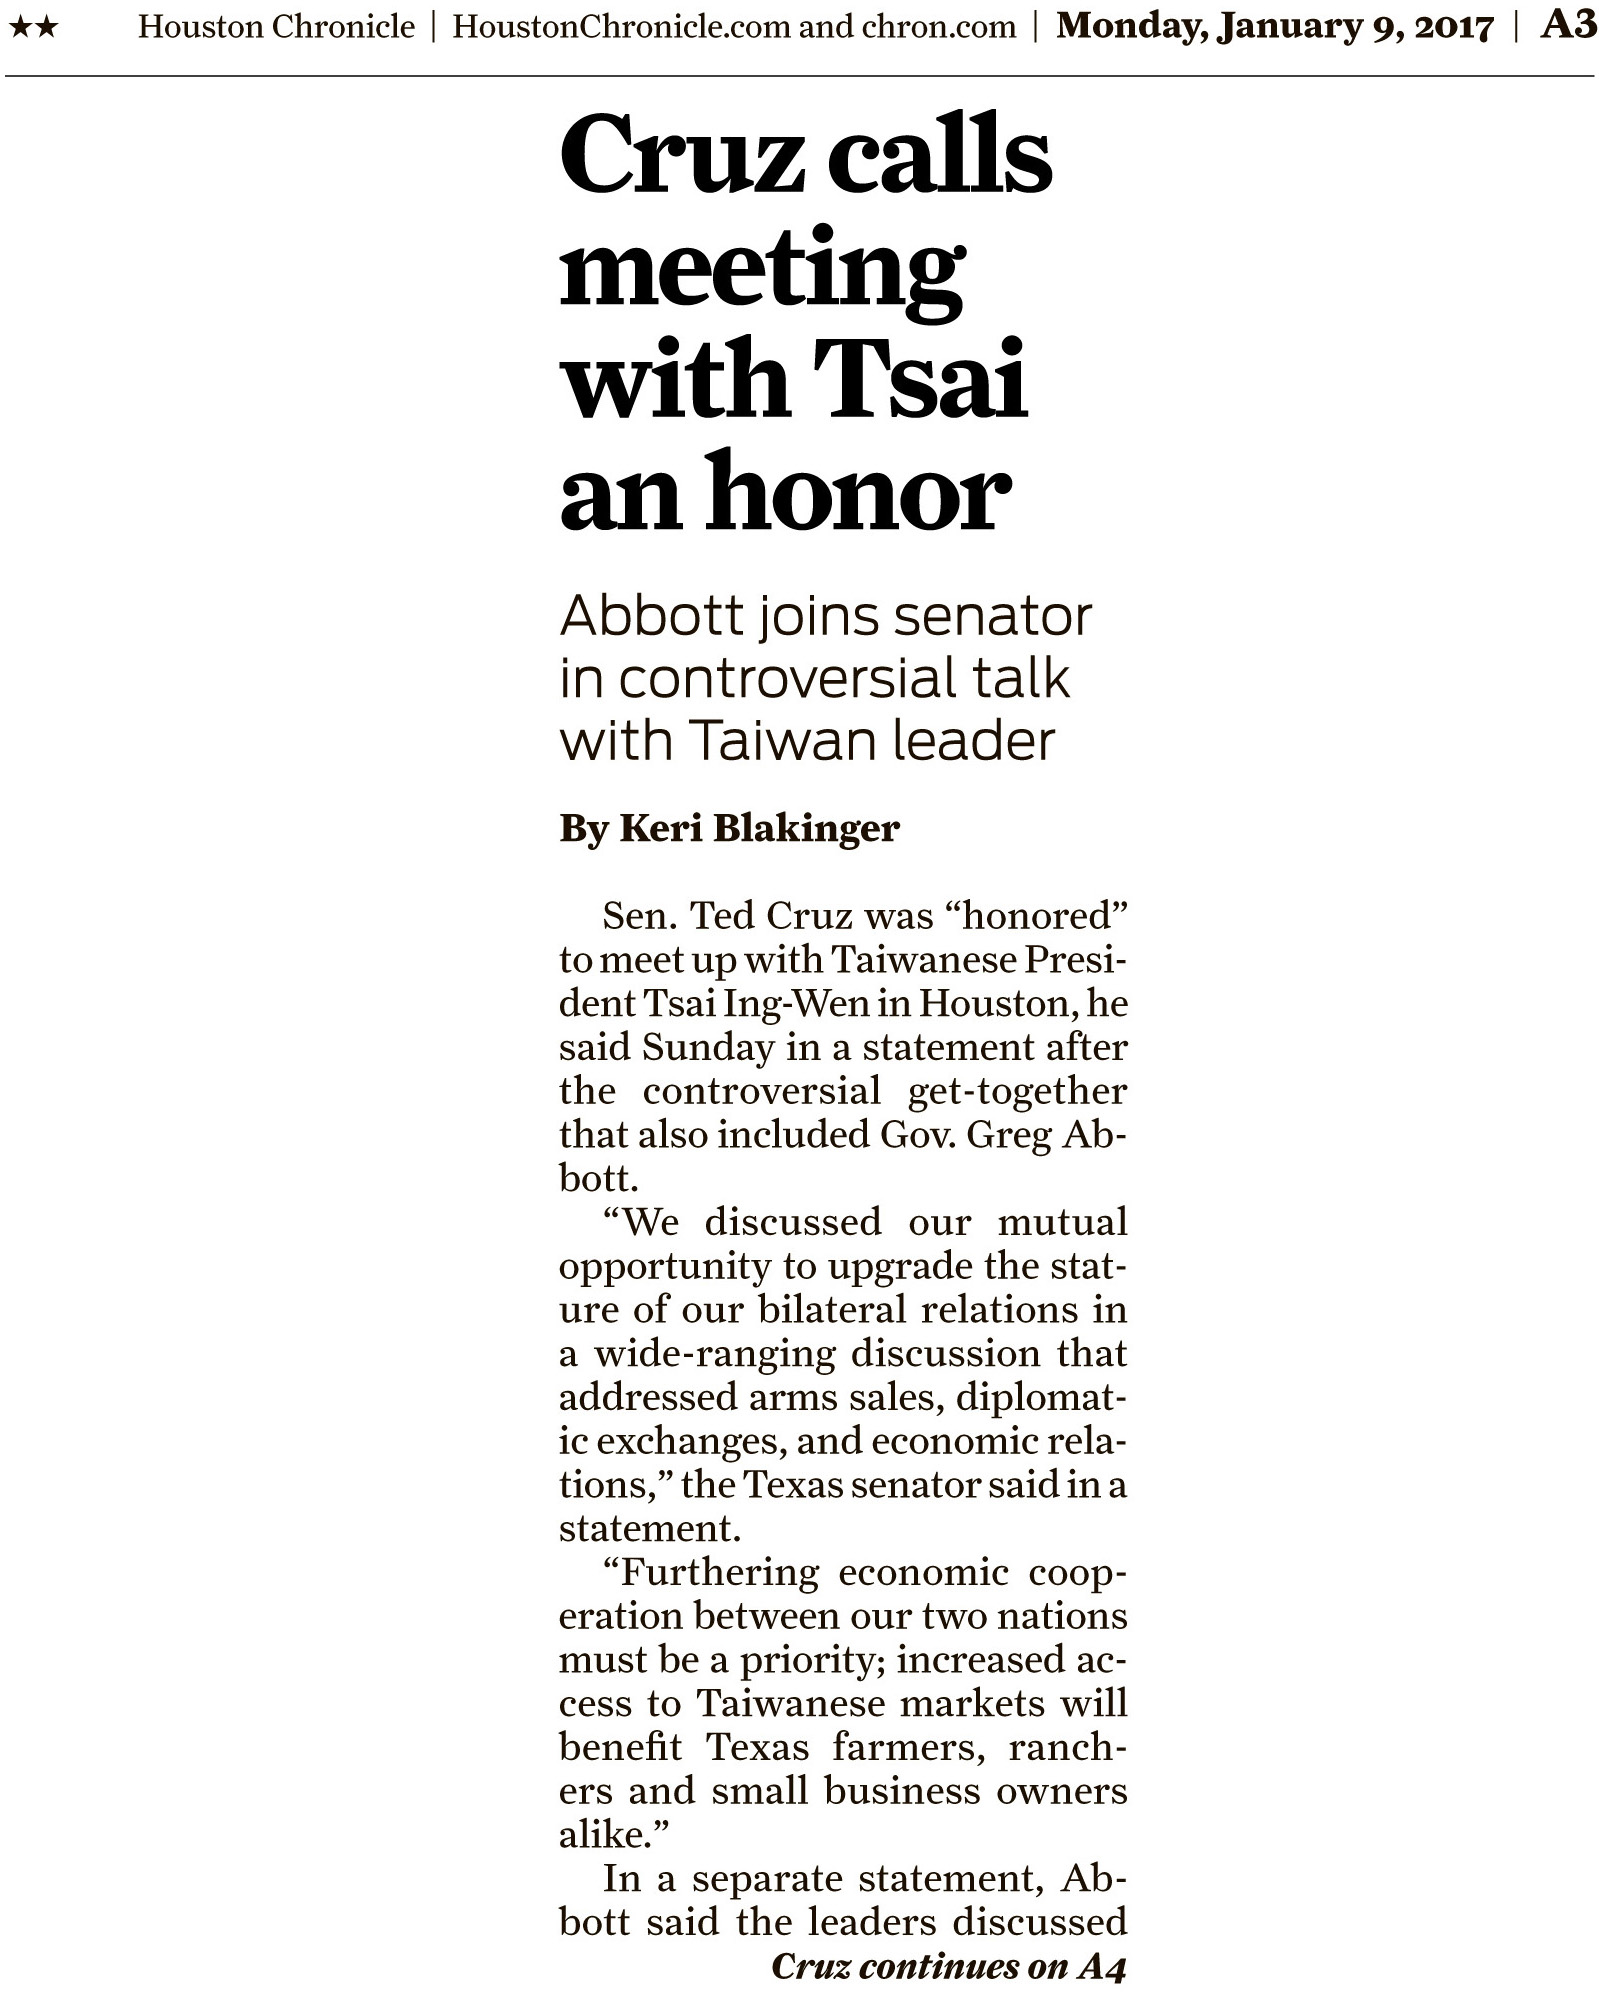 Cruz llama la reunión con Tsai un honor, Abbott se une a senador en polémica conversación con la líder de Taiwán